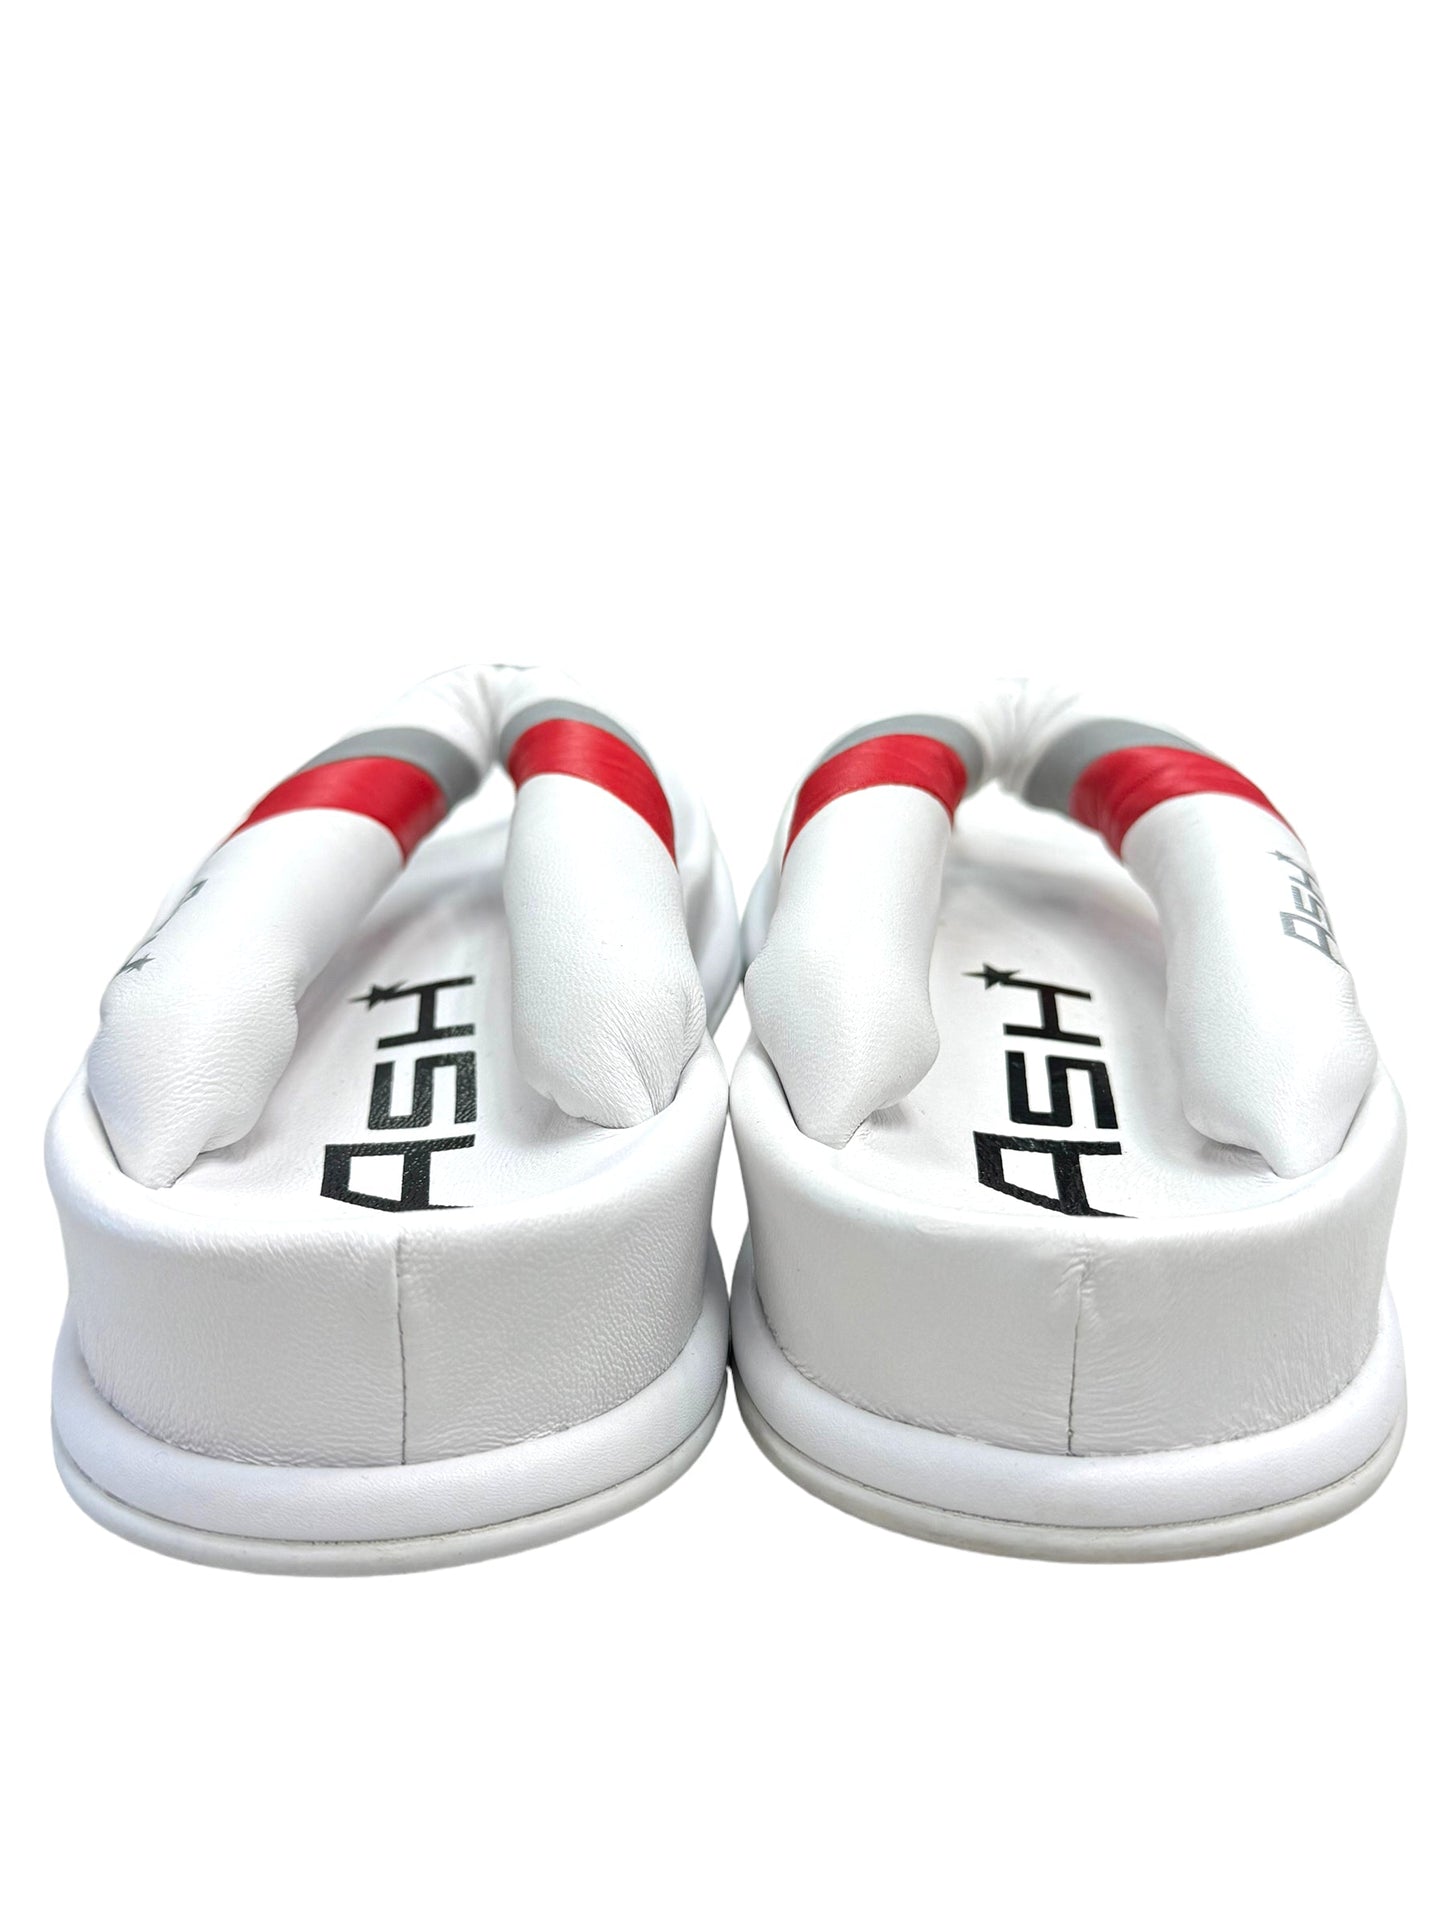 White Sandals Flip Flops Ash, Size 6.5